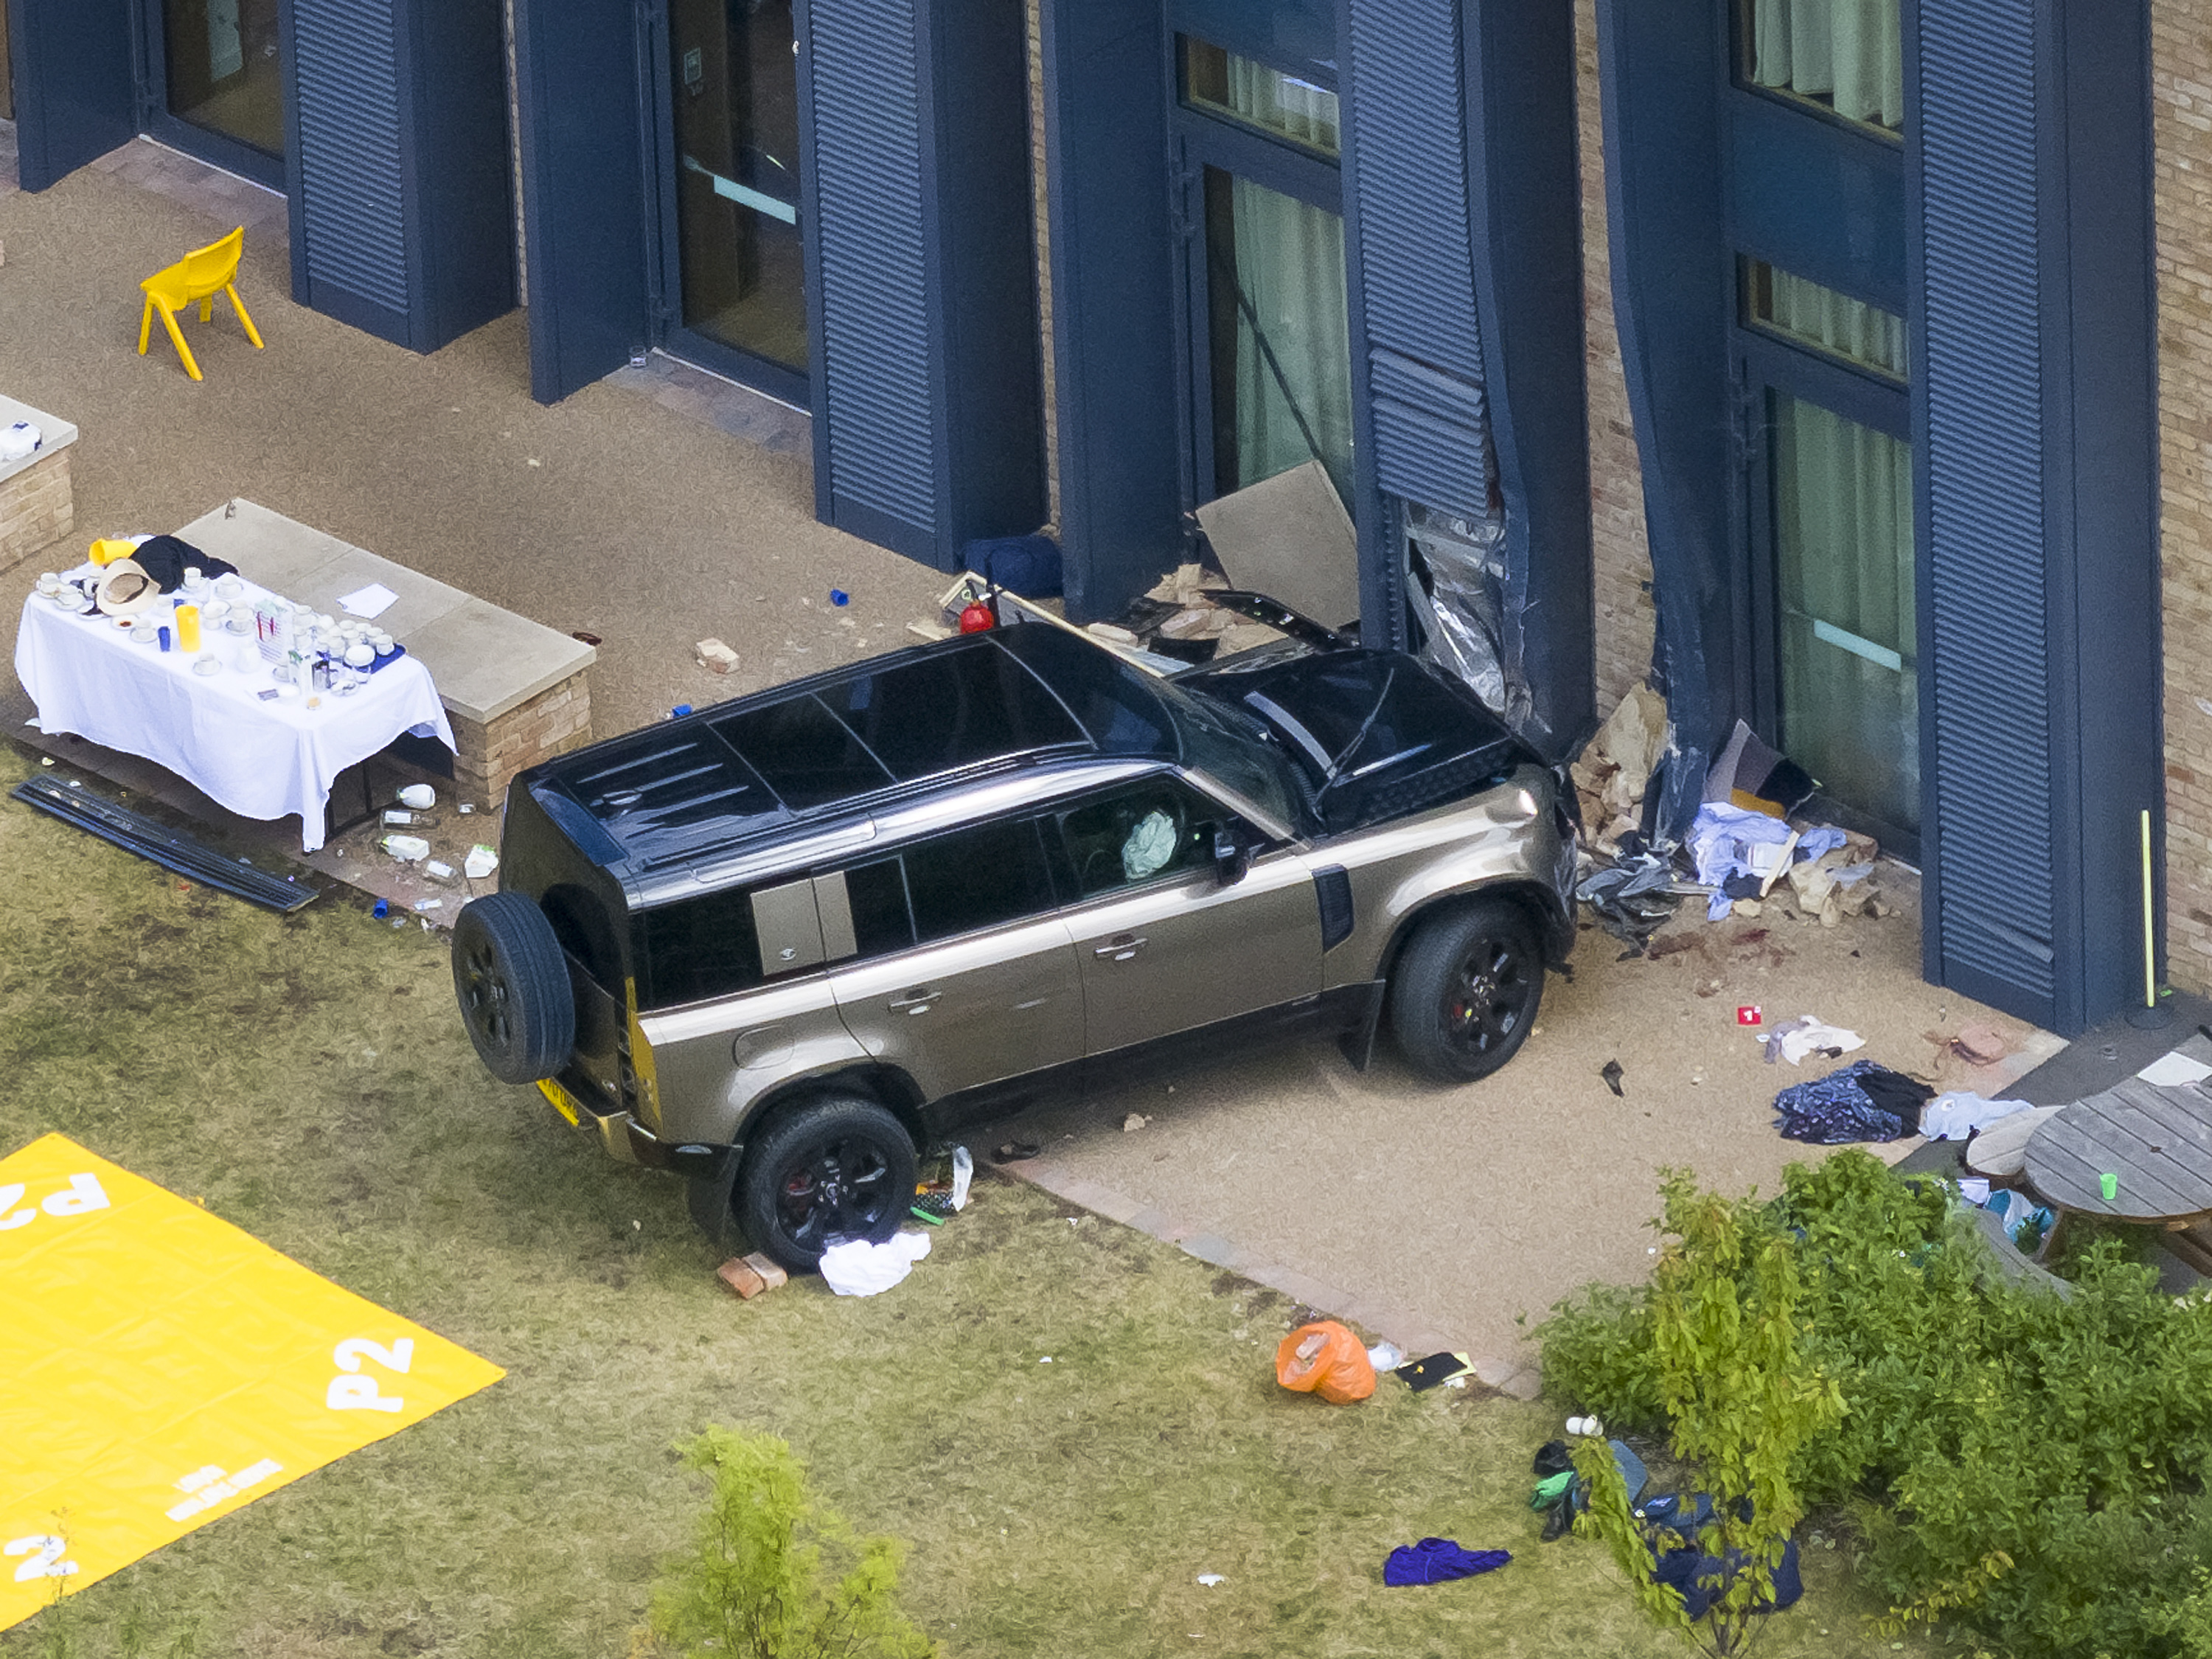 Ein zwei Tonnen schwerer Land Rover krachte durch einen Zaun einer Grundschule in Wimbledon, tötete ein achtjähriges Mädchen und verletzte 16 weitere Menschen, darunter ein Baby